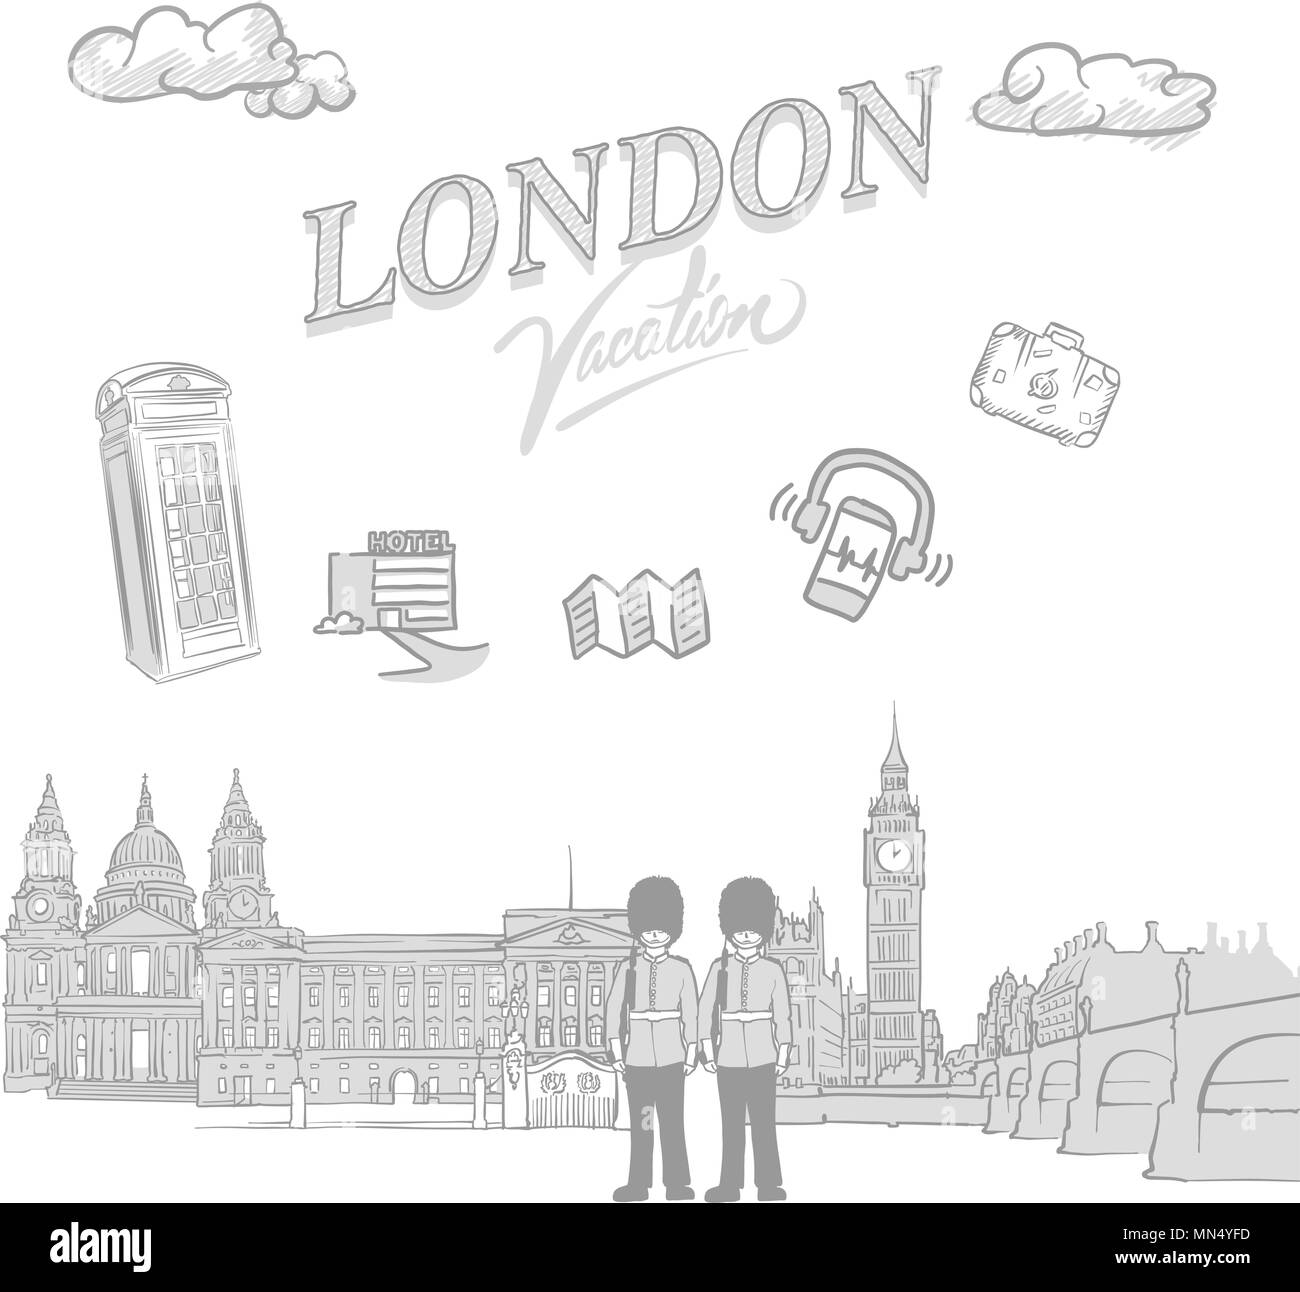 London Travel Marketing abdecken, von Hand erstellt einen Vektor Skizzen Stock Vektor